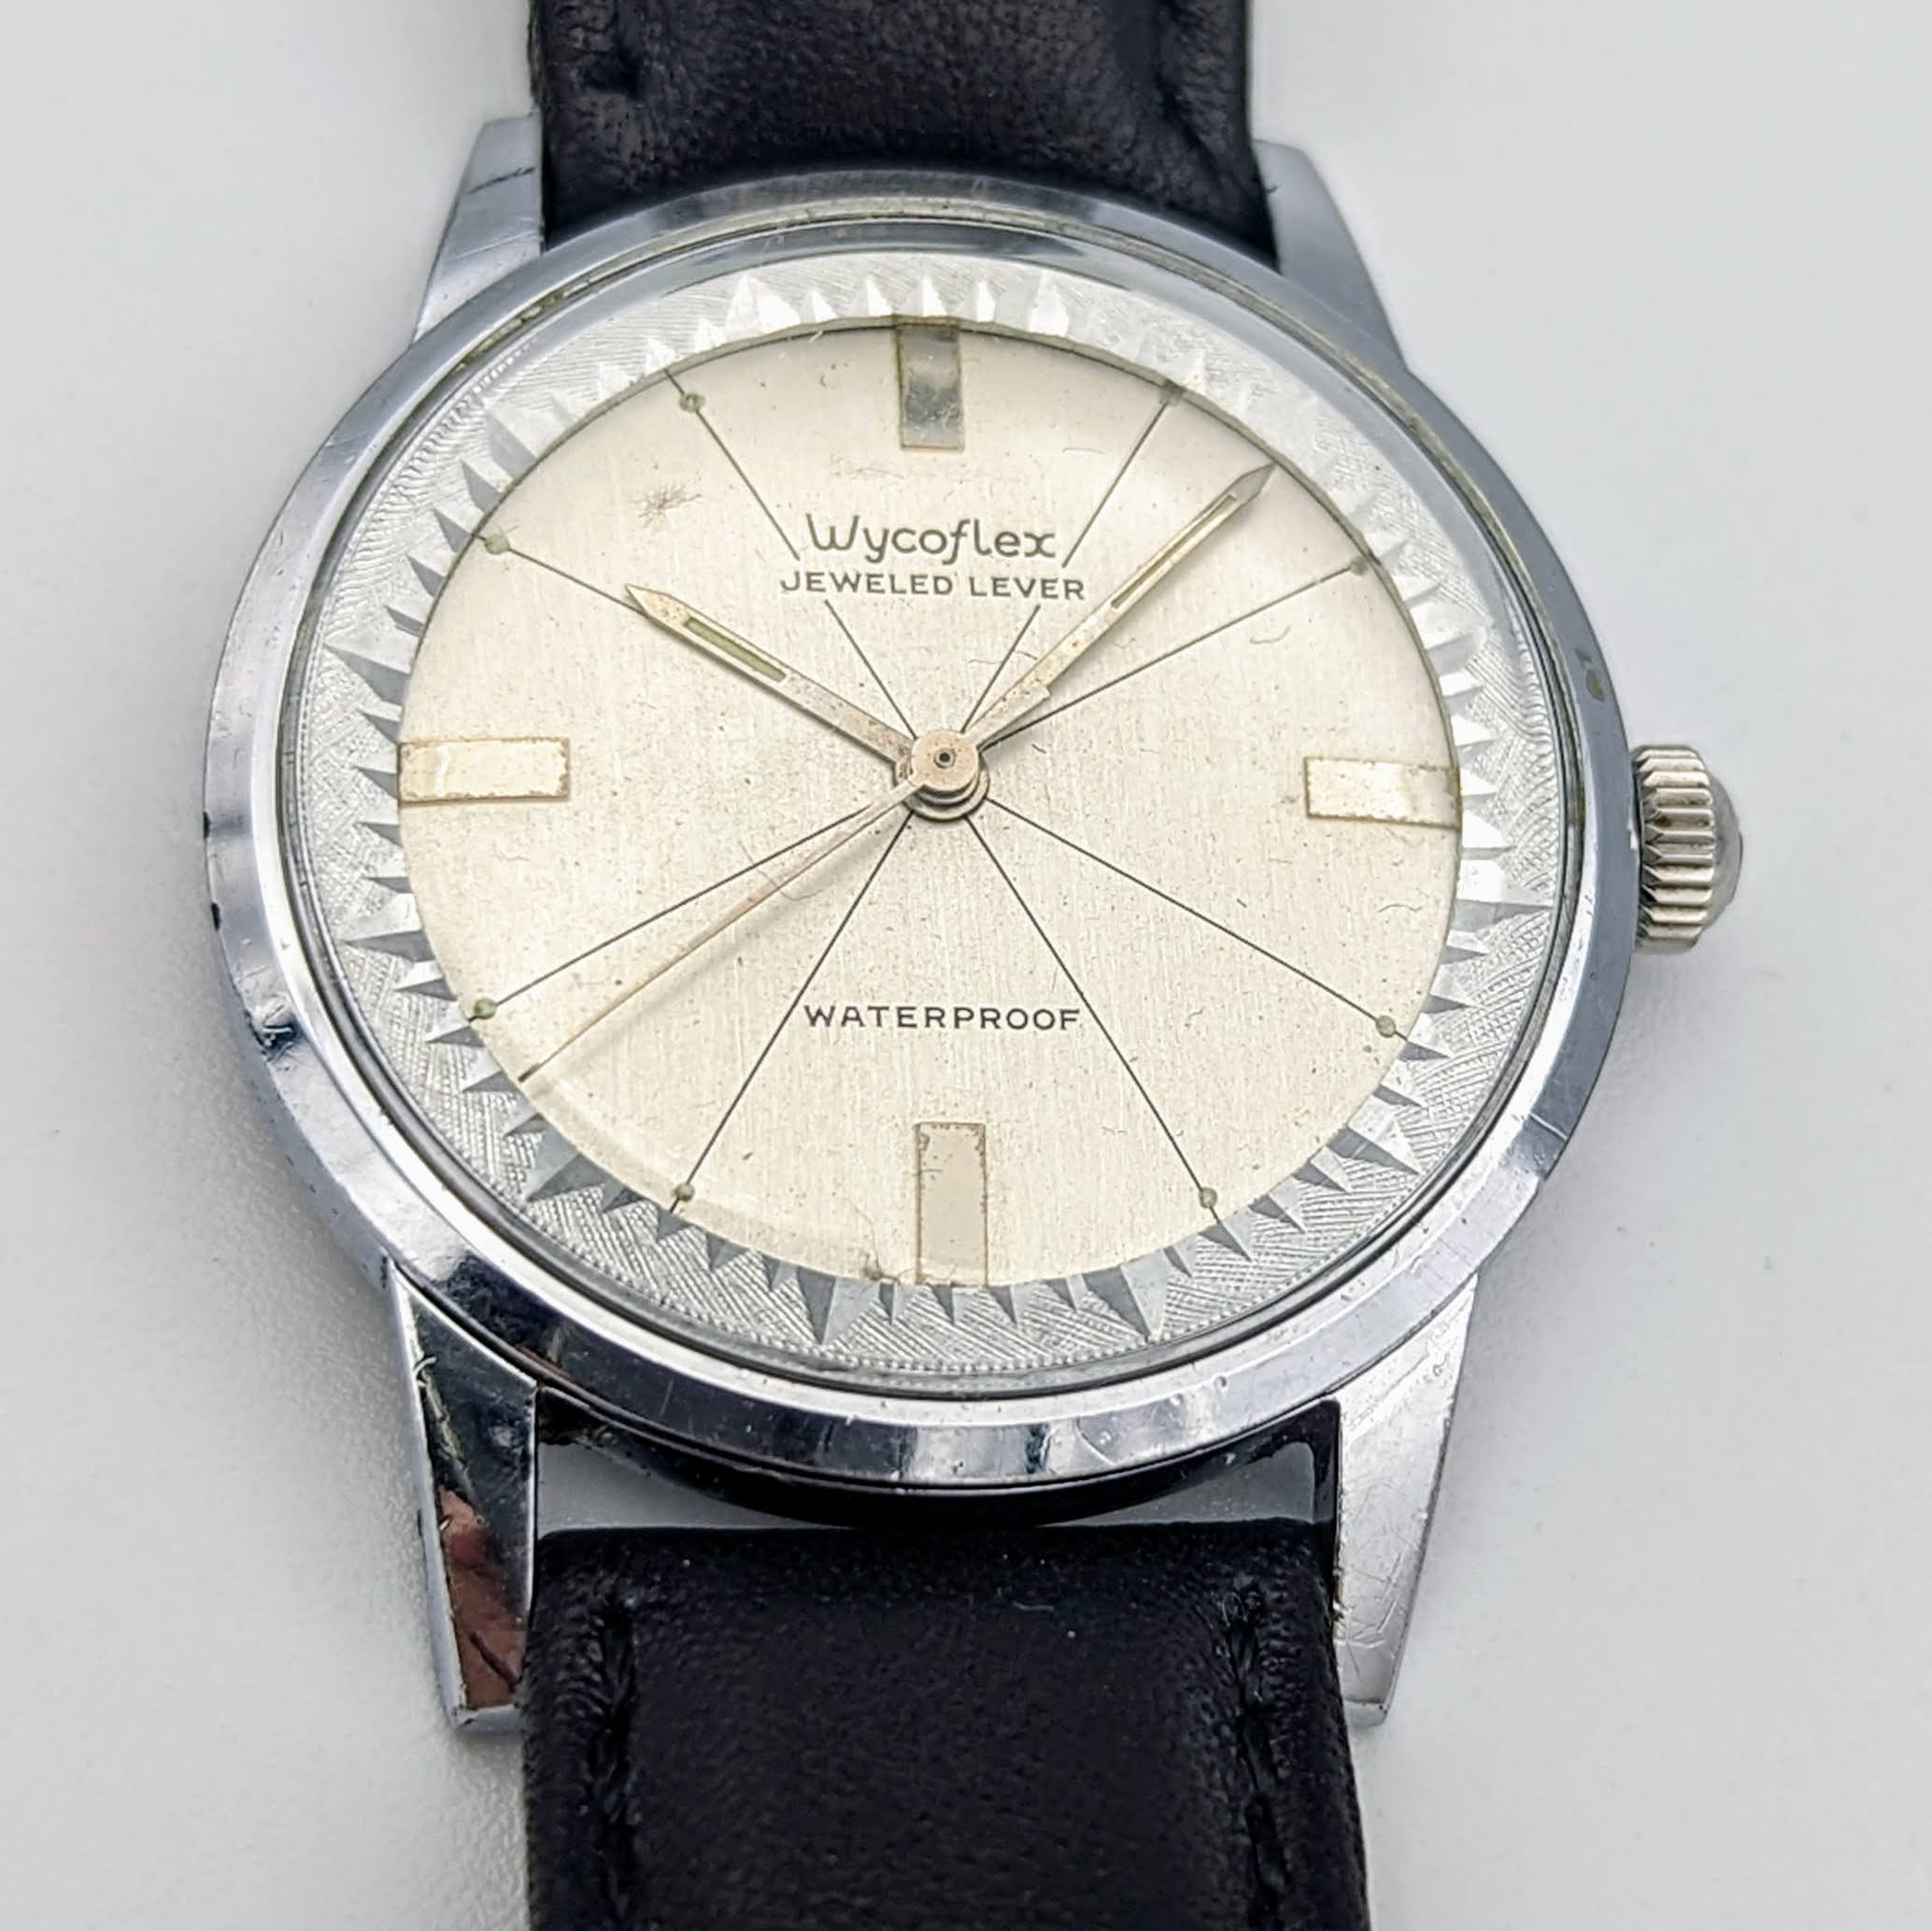 WYCOFLEX by WYLER Wristwatch Cal. WH 314 7 Jewels Vintage Watch